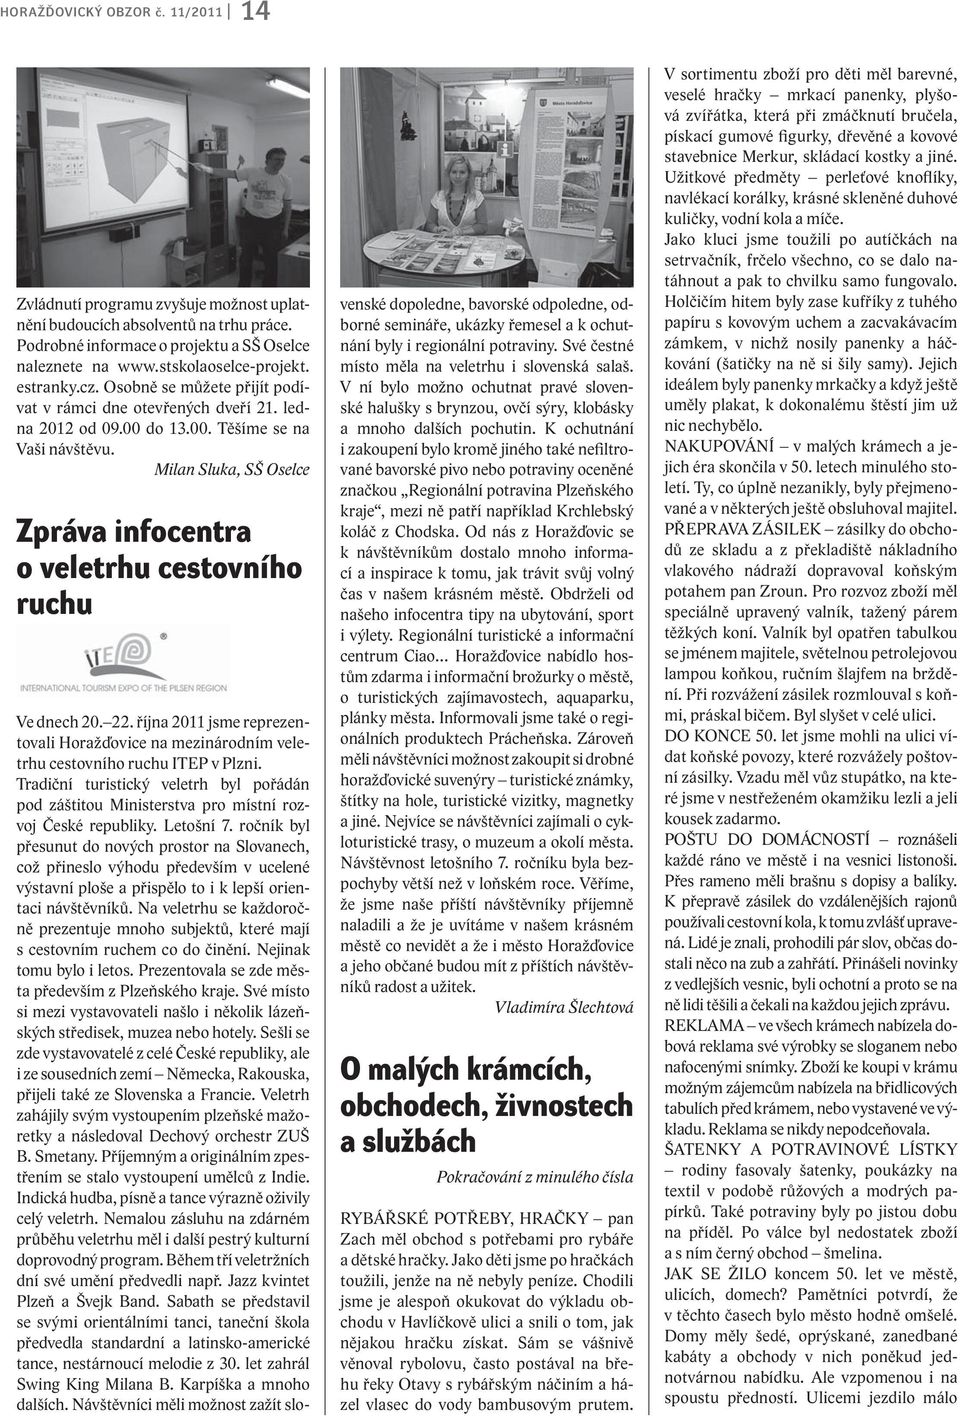 Milan Sluka, SŠ Oselce Zpráva infocentra o veletrhu cestovního ruchu Ve dnech 20. 22. října 2011 jsme reprezentovali Horažďovice na mezinárodním veletrhu cestovního ruchu ITEP v Plzni.